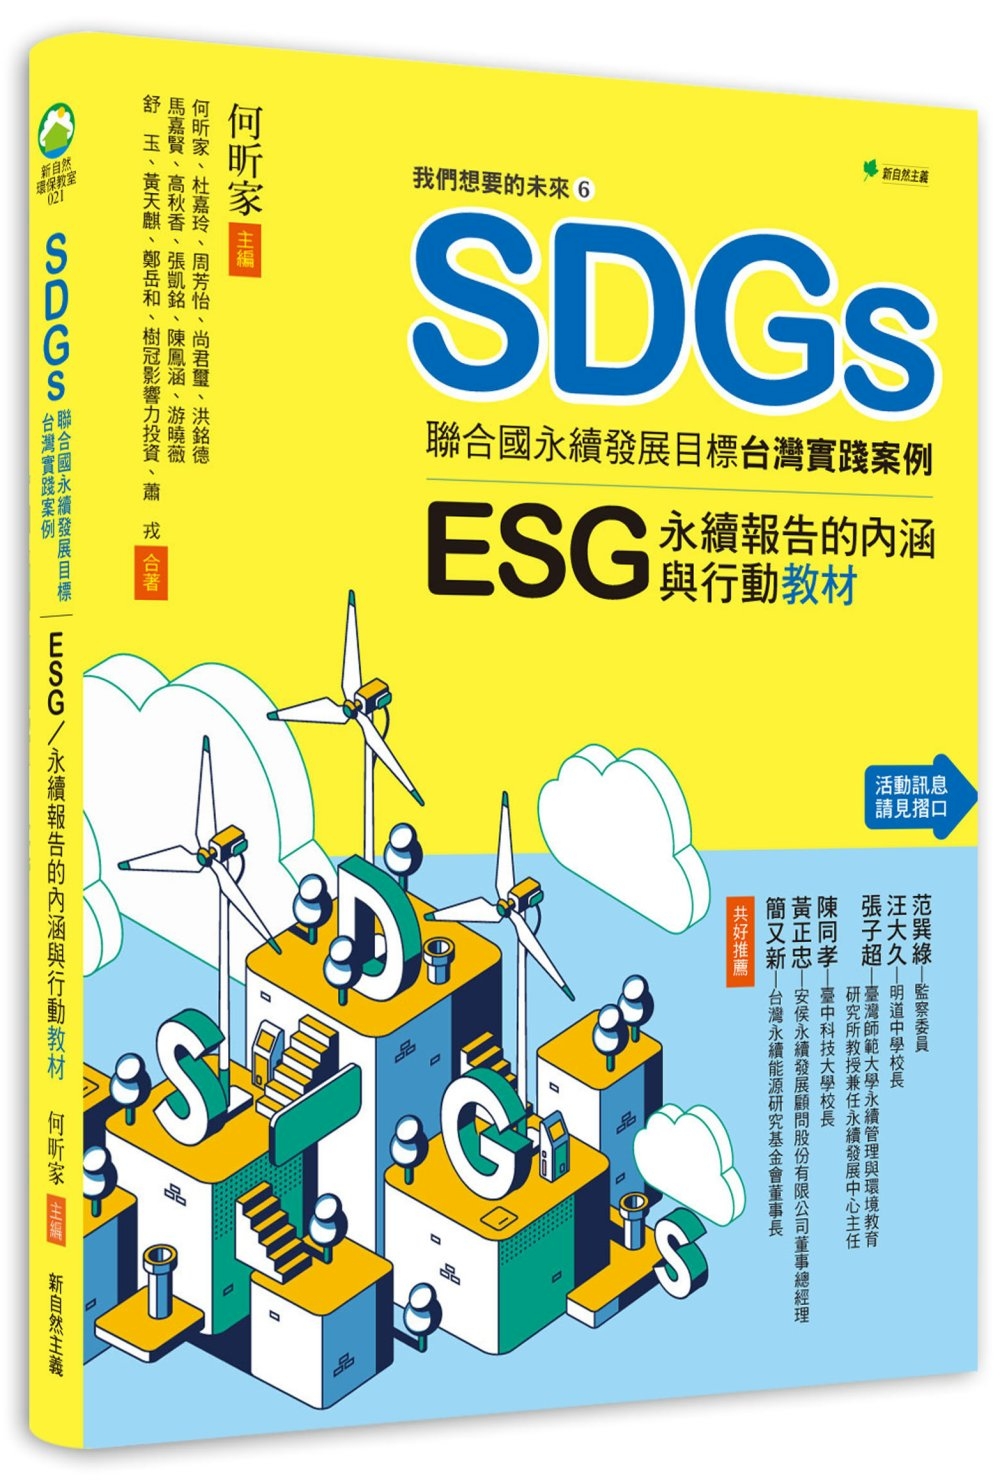 我們想要的未來⑥SDGs聯合國永續發展目標台灣實踐案例：ESG/永續報告的內涵與行動教材